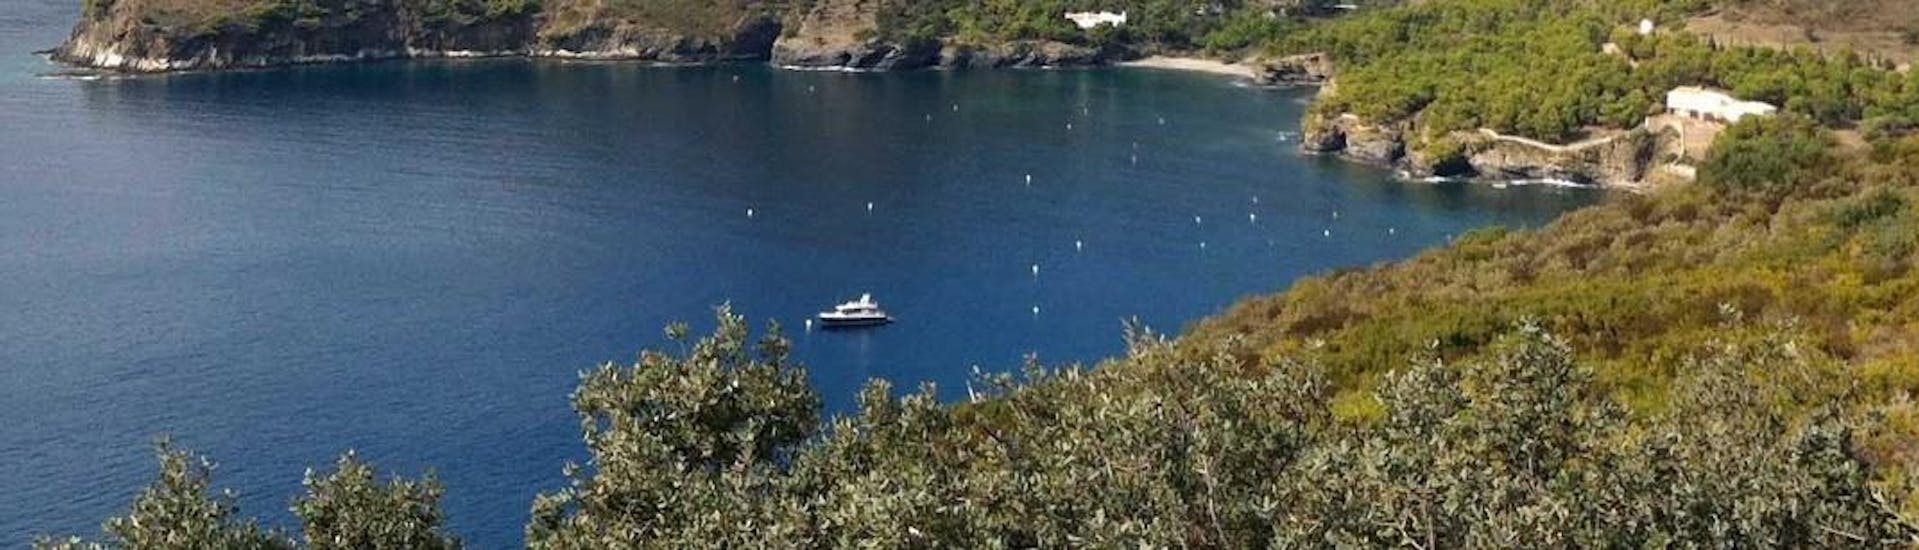 Excursión en Catamarán a Cap Norfeu y Cadaqués con Snorkeling con Magic Catamarans Mallorca